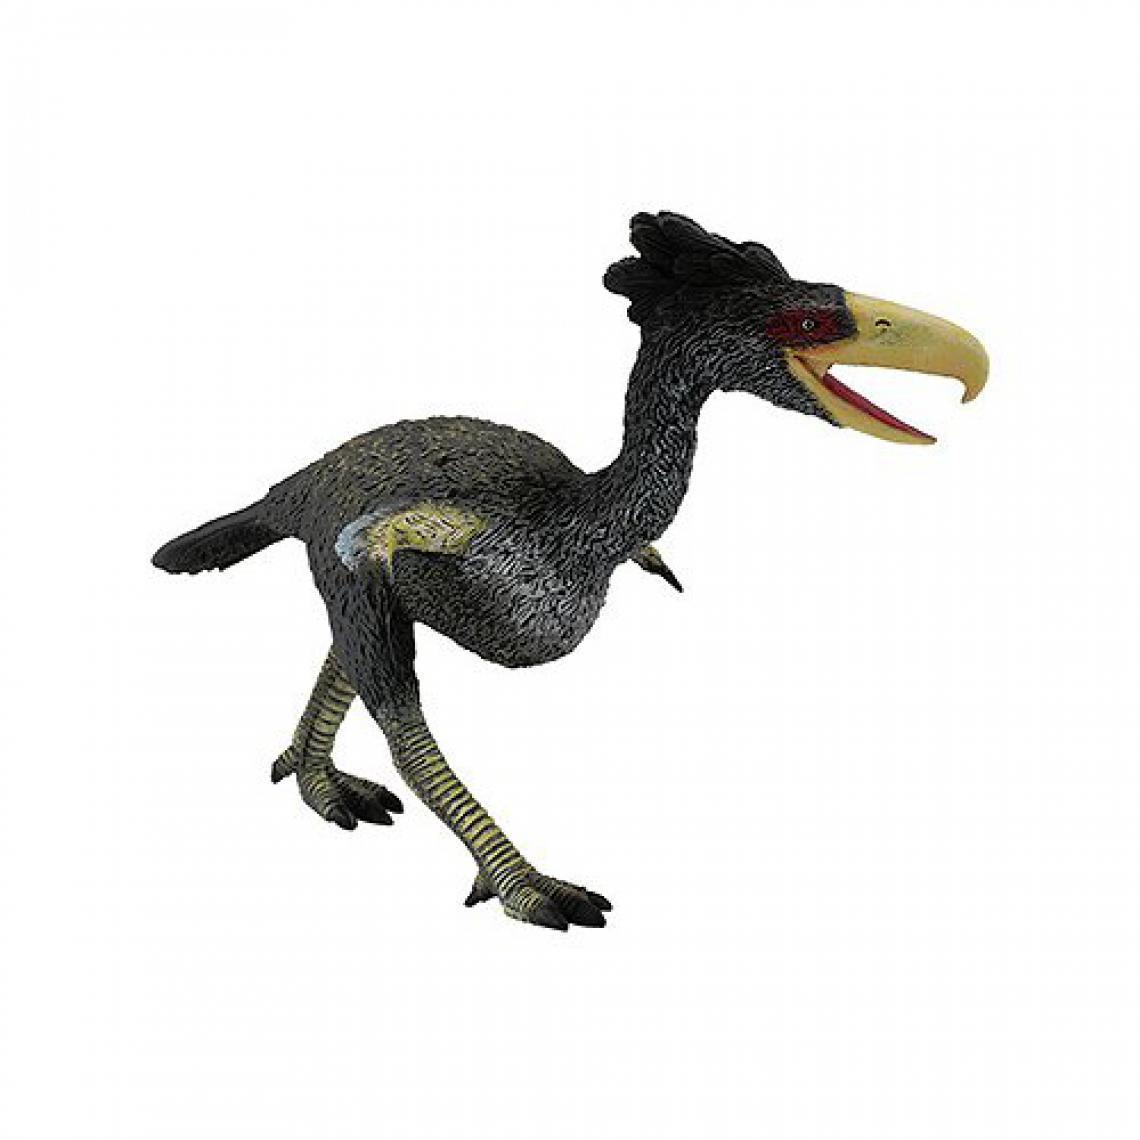 Figurines Collecta - Figurine Dinosaure : Kelenken - Dinosaures